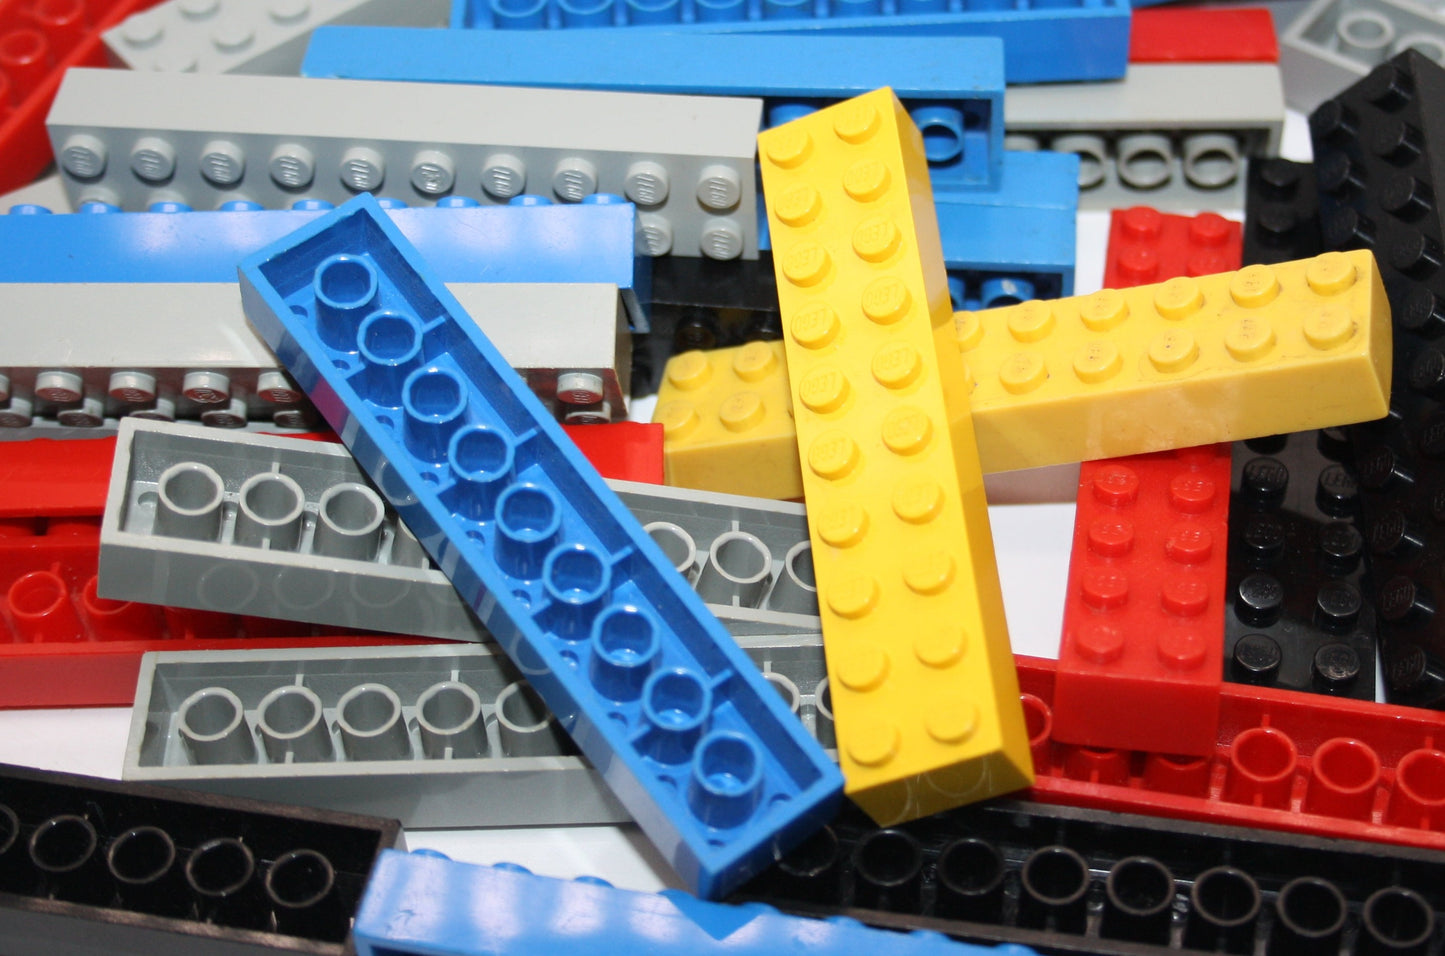 LEGO® - 2x10 Basic/Basis Steine/Grundbausteine - 3006 - bunt gemischt - 6x-100x Sparpaket